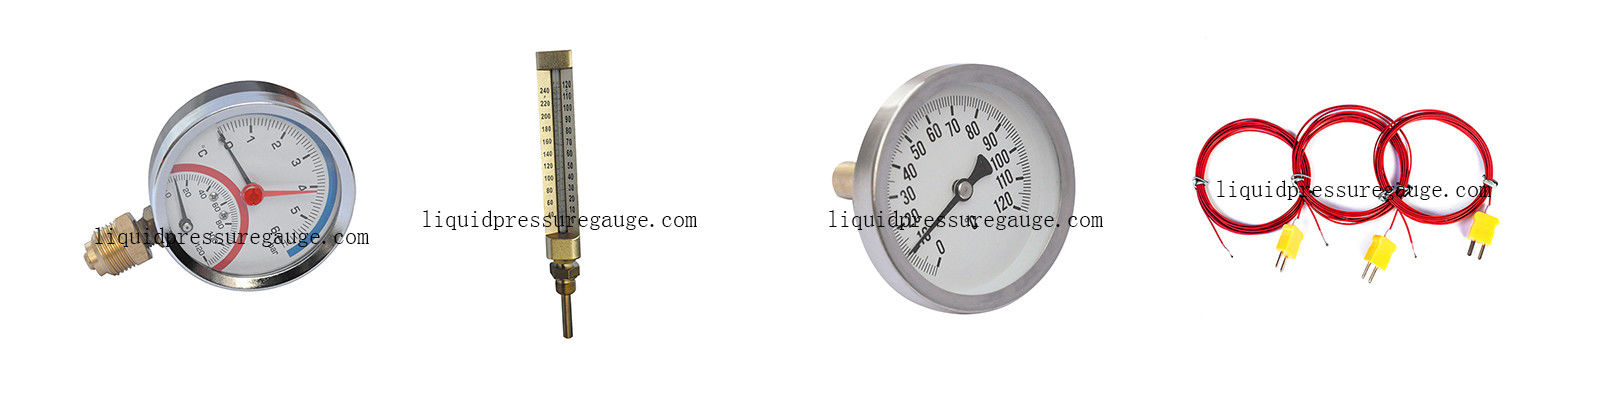 Termómetro y medidores de temperatura